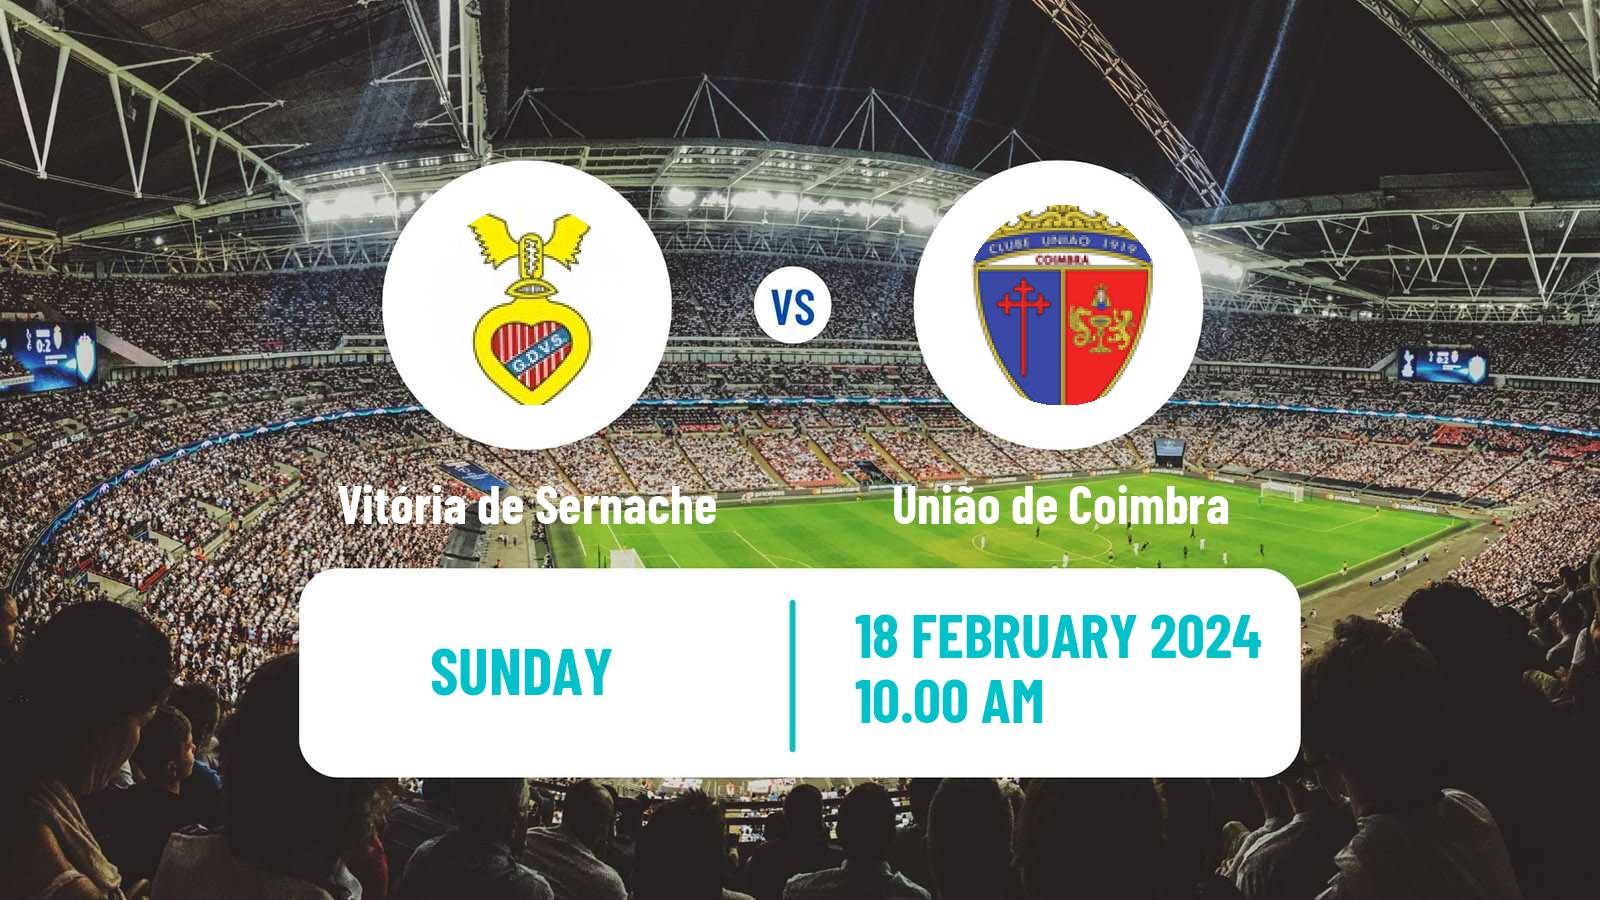 Soccer Campeonato de Portugal - Group C Vitória de Sernache - União de Coimbra